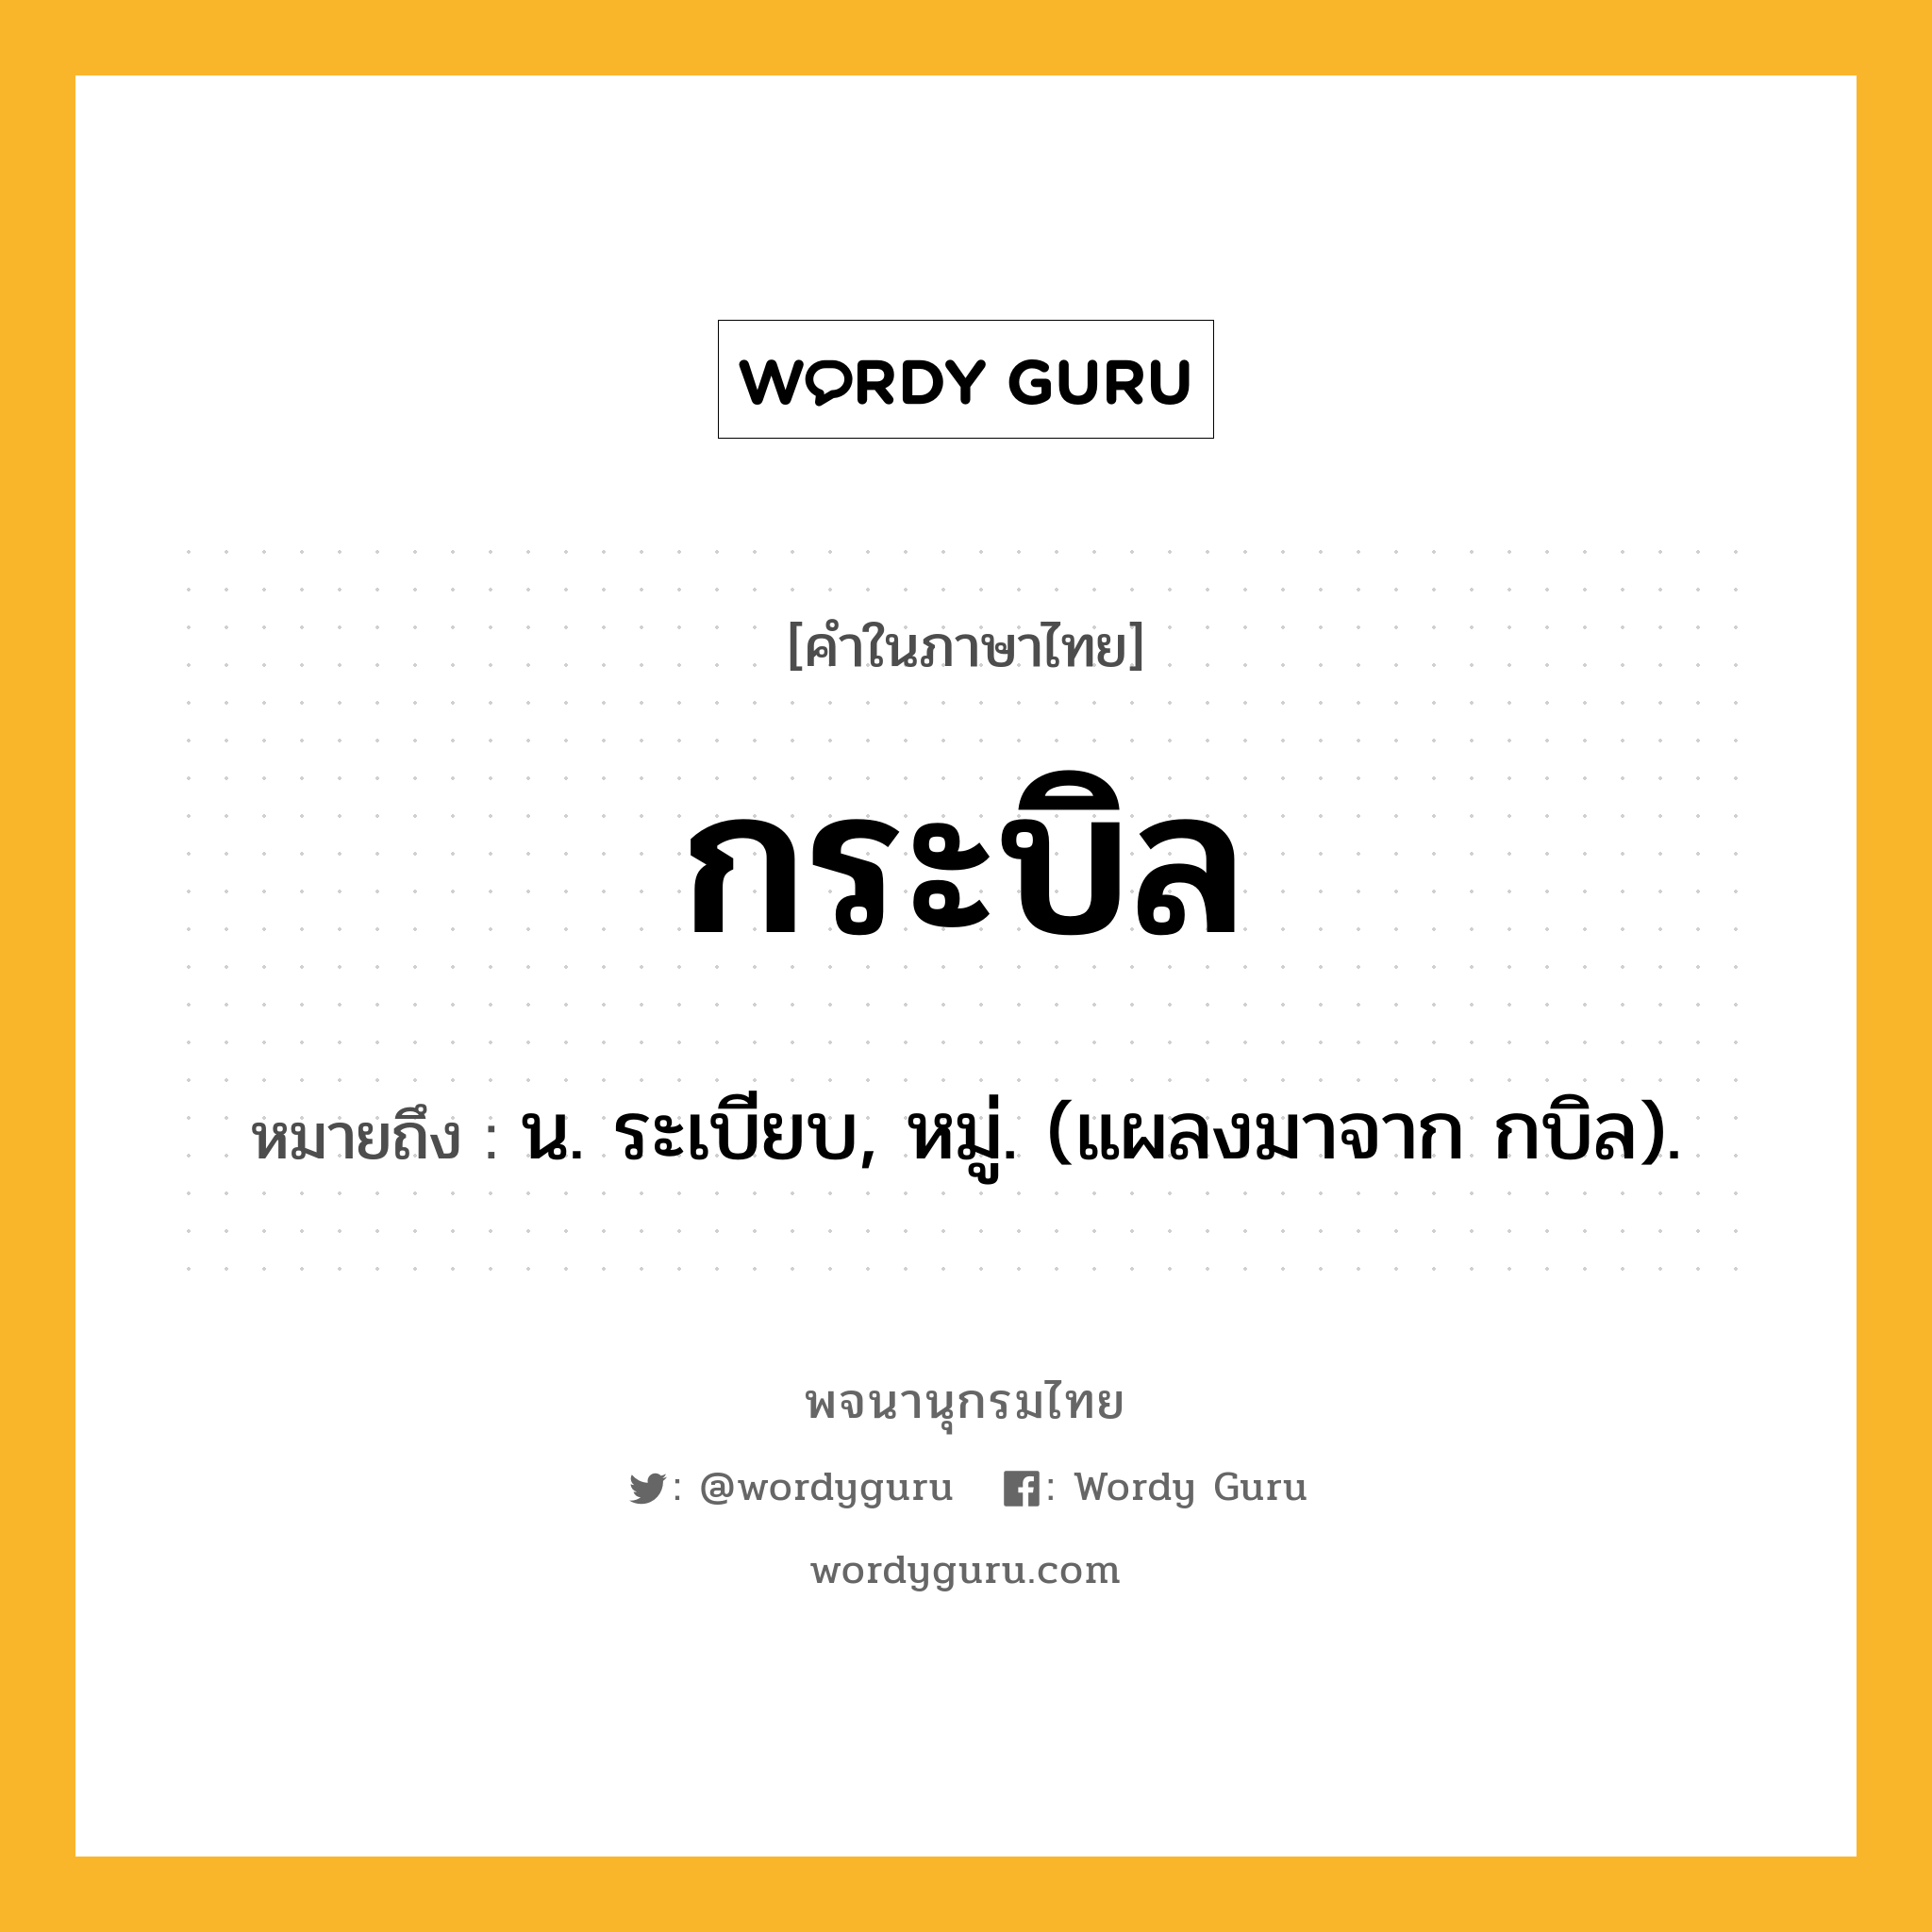 กระบิล หมายถึงอะไร?, คำในภาษาไทย กระบิล หมายถึง น. ระเบียบ, หมู่. (แผลงมาจาก กบิล).